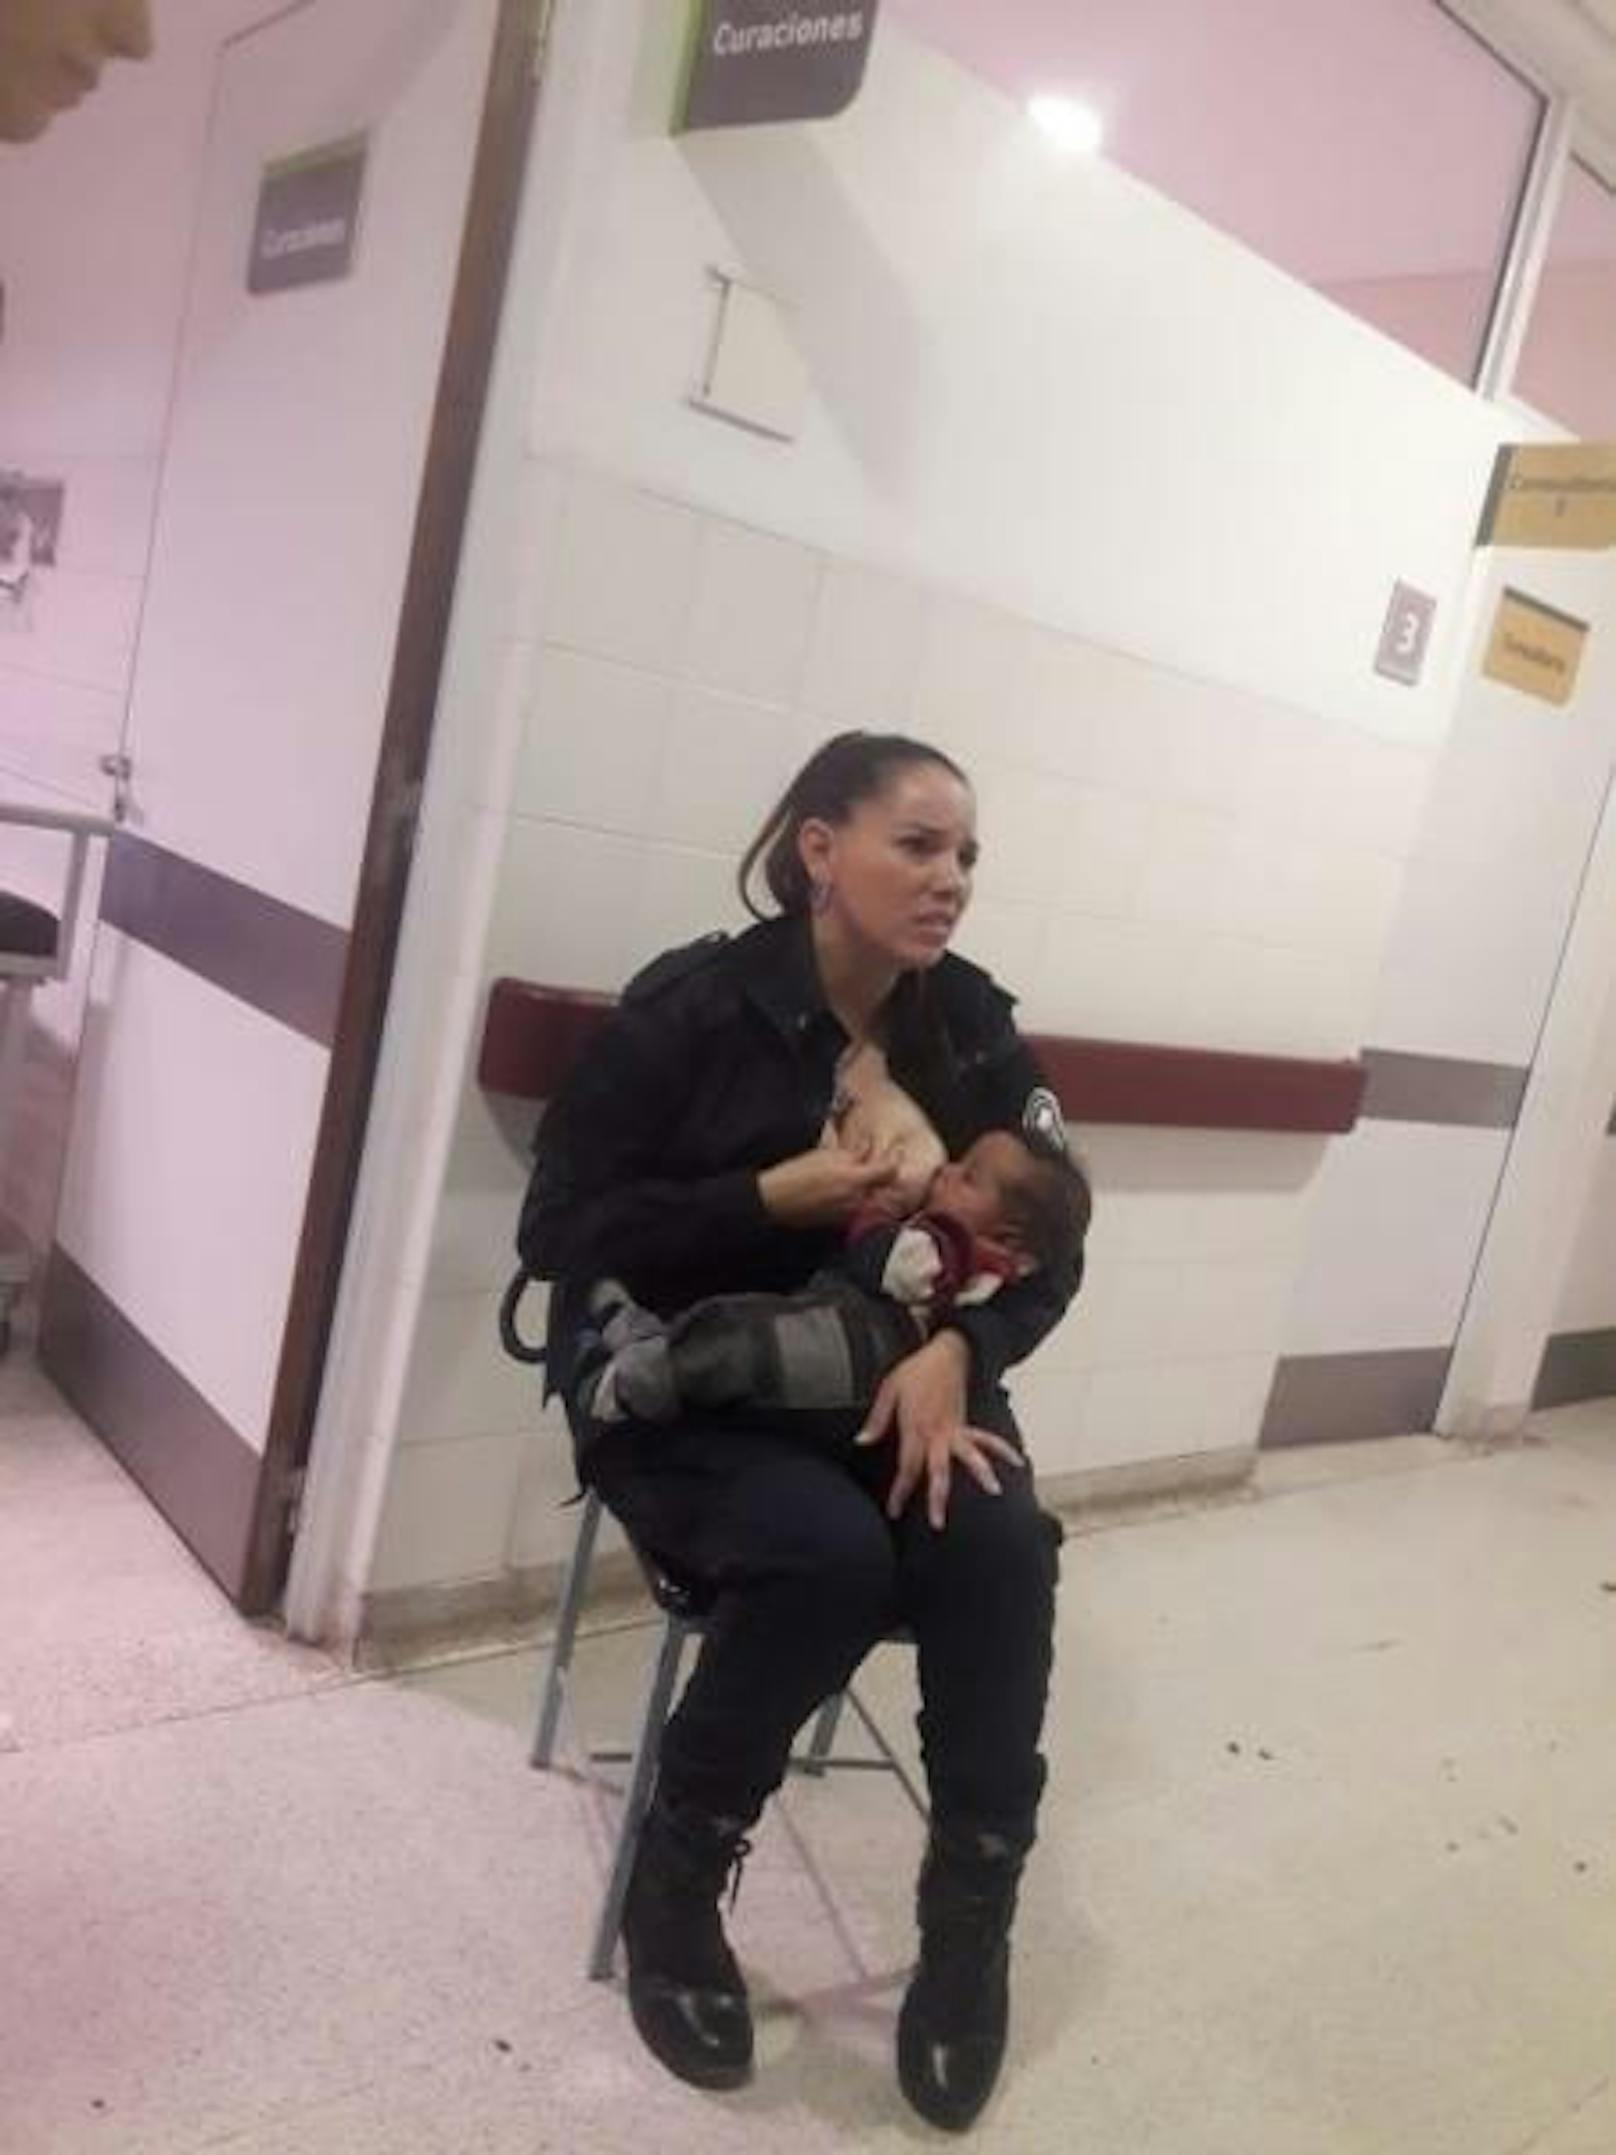 Einen ähnlichen Fall gab es im August in Argentinien: Die Polizistin Celeste Ayala wurde als Heldin gefeiert, als sie in einem Spital ein hungriges Baby stillte, das kurz zuvor eingeliefert worden war.